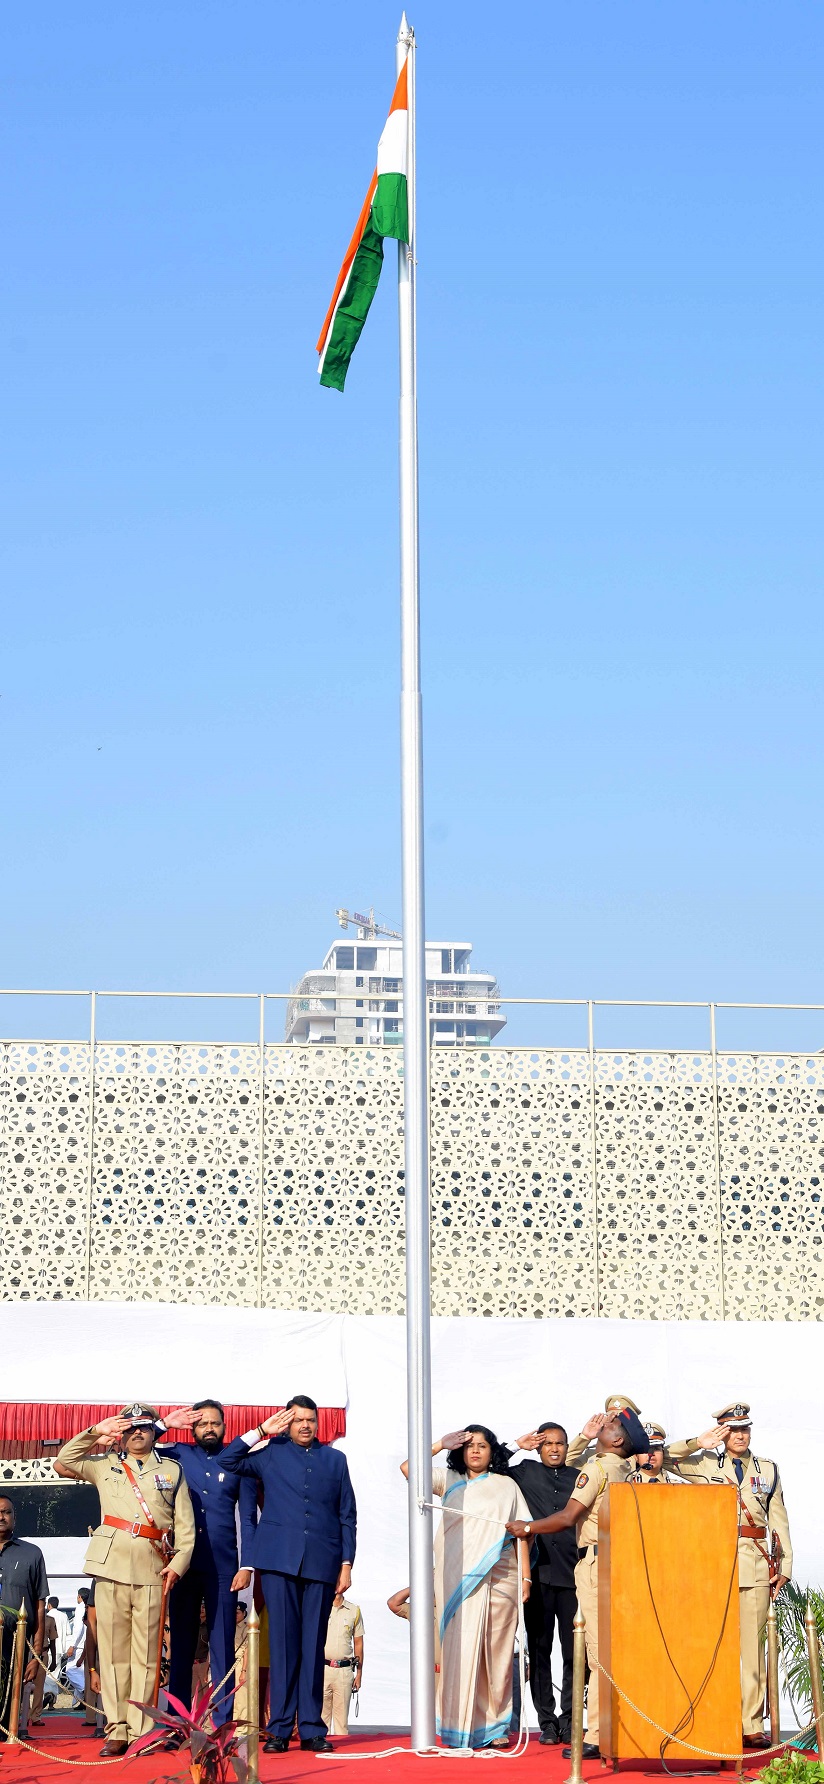 प्रजासत्ताकदिनी उपमुख्यमंत्री देवेंद्र फडणवीस यांच्या हस्ते नागपुरात ध्वजारोहण